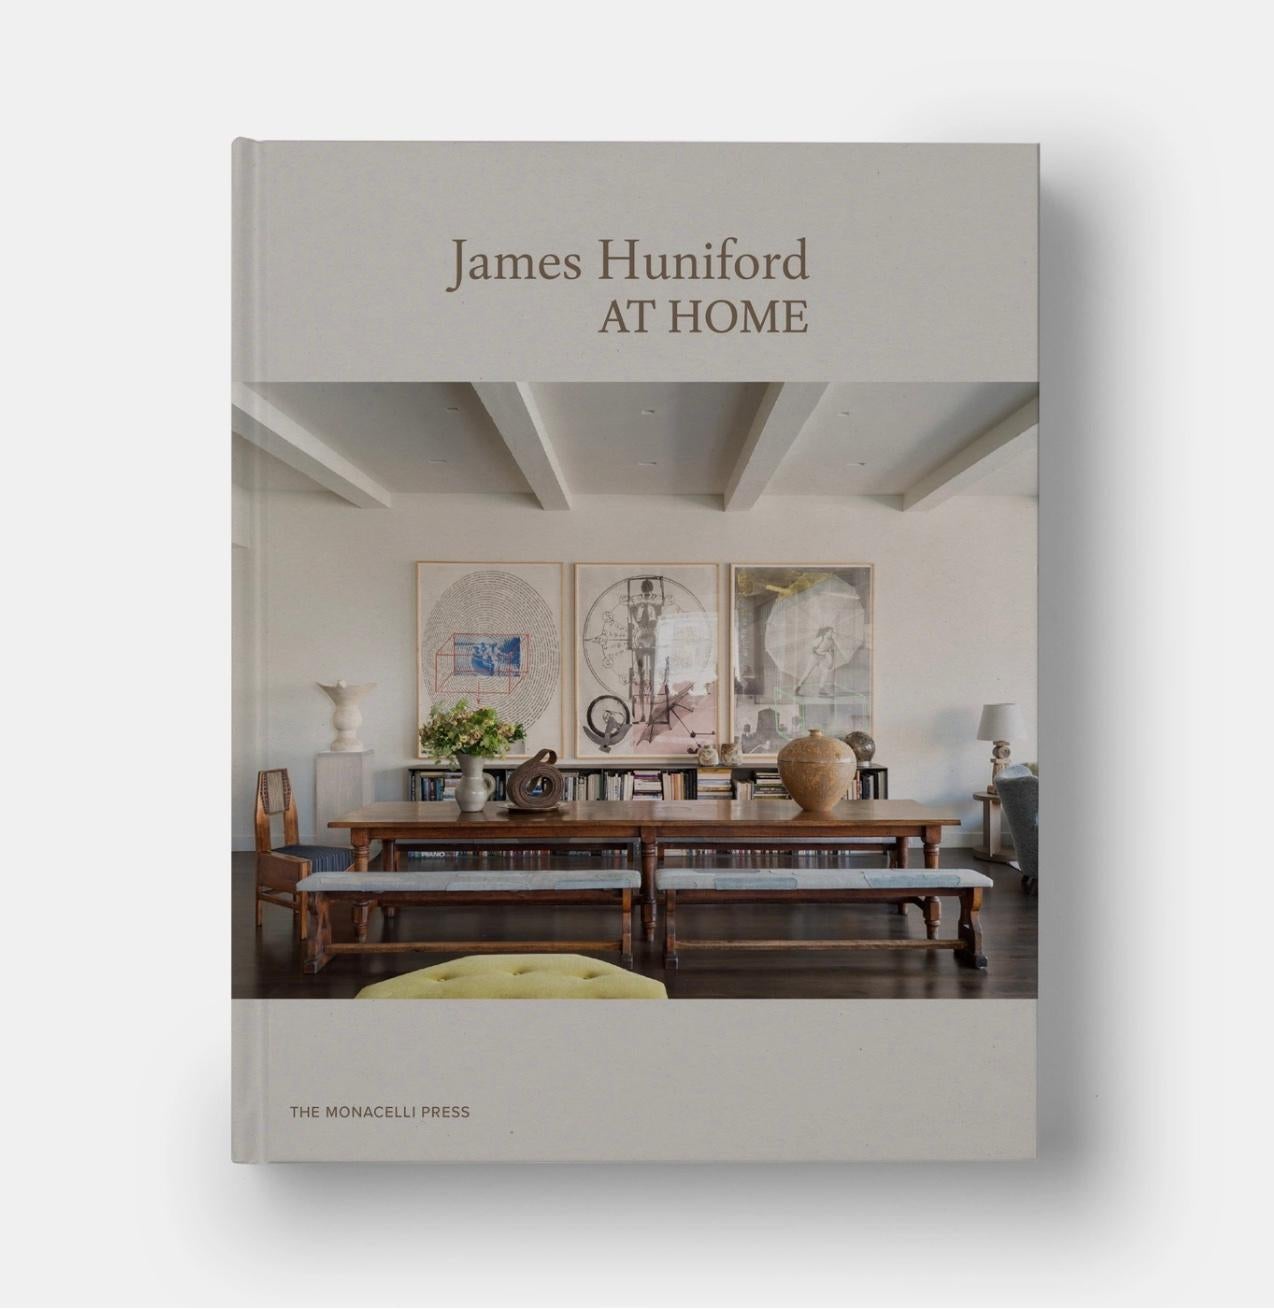 Brandneues Exemplar von James Huniford At Home, fester Einband von Monacelli Press, 2020. Ich habe es gerade bei einem Schlussverkauf von Barnes and Noble gekauft und festgestellt, dass ich es schon habe! Ups. Mein Verlust ist Ihr Gewinn. 

Einmal